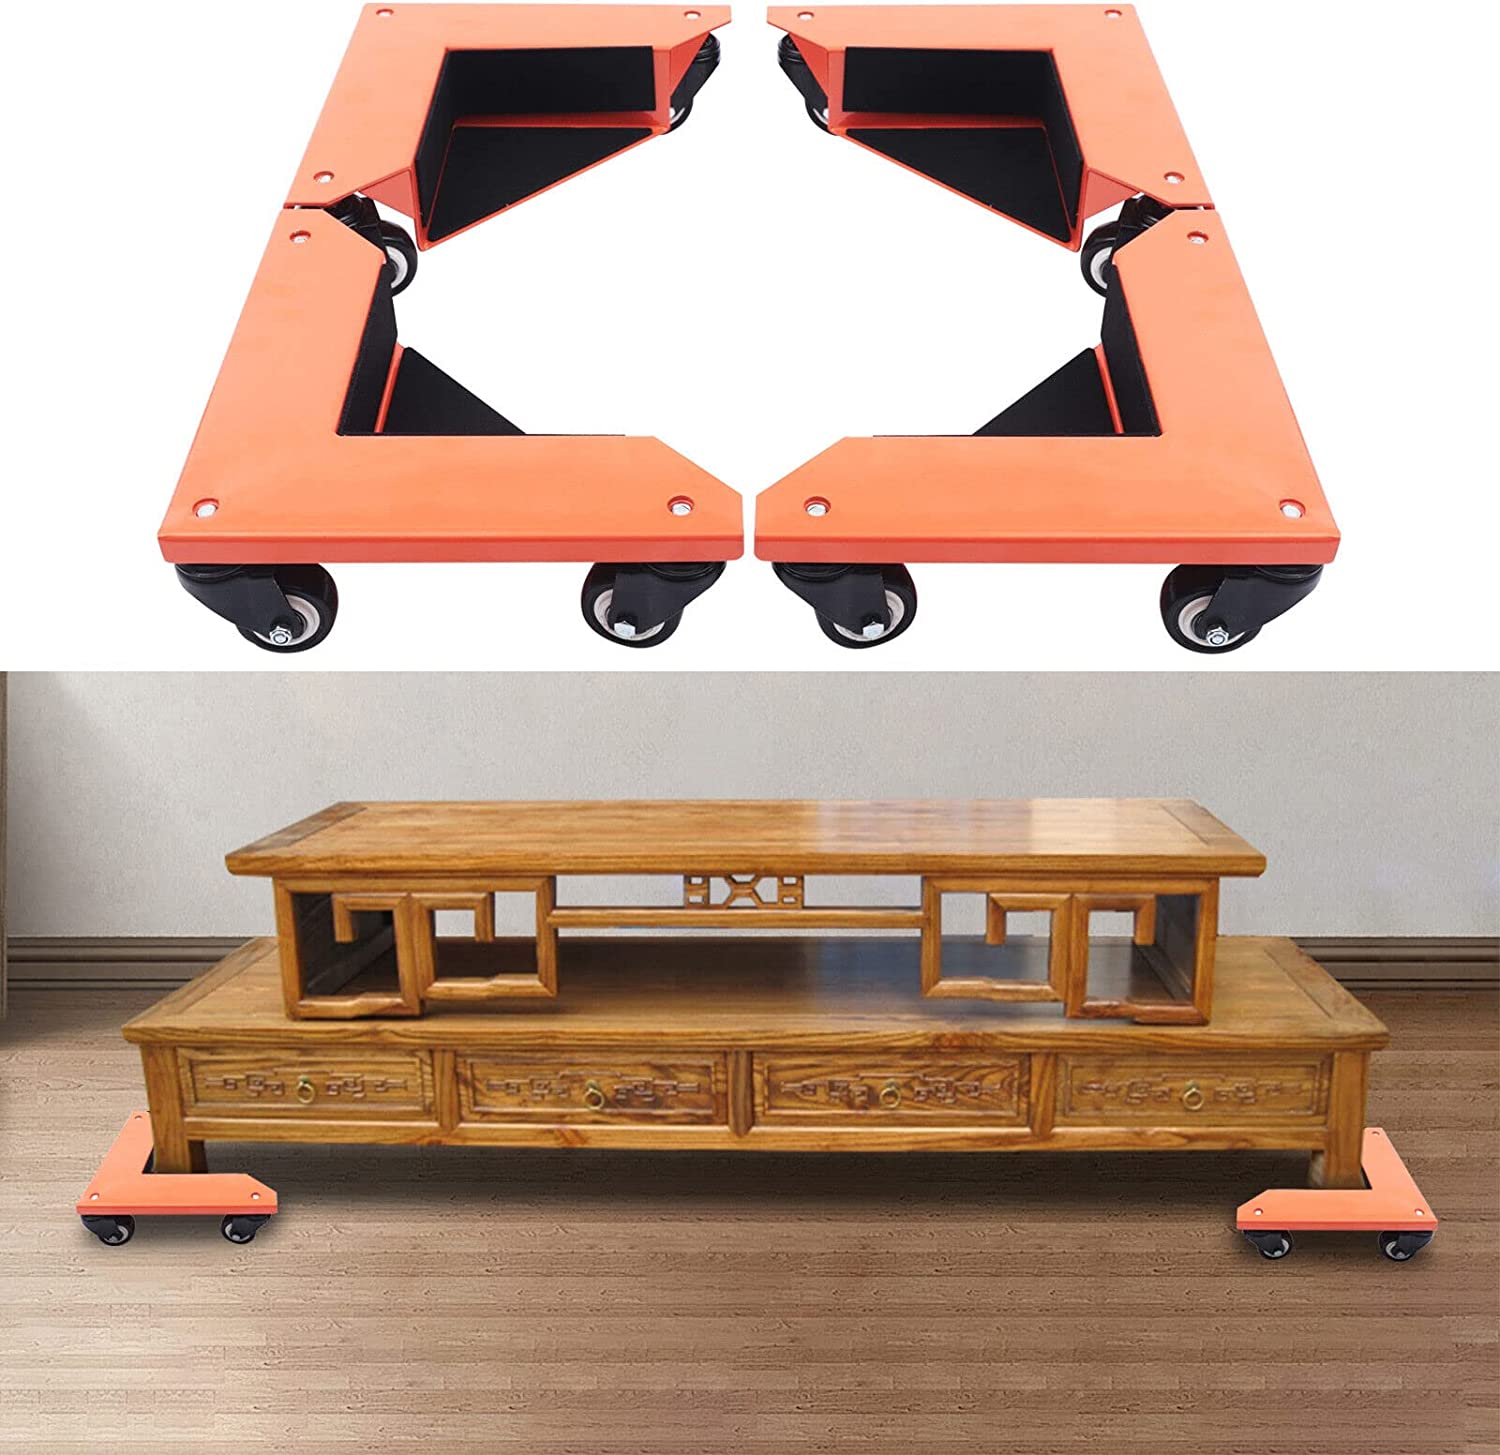 Möbelheber mit 4 Beweglichen Gleitern, Möbel-Umzug Set, Furniture Lifter Möbeltransport Transporthilfe Lenkrollen Möbelgleiter Möbel Roller